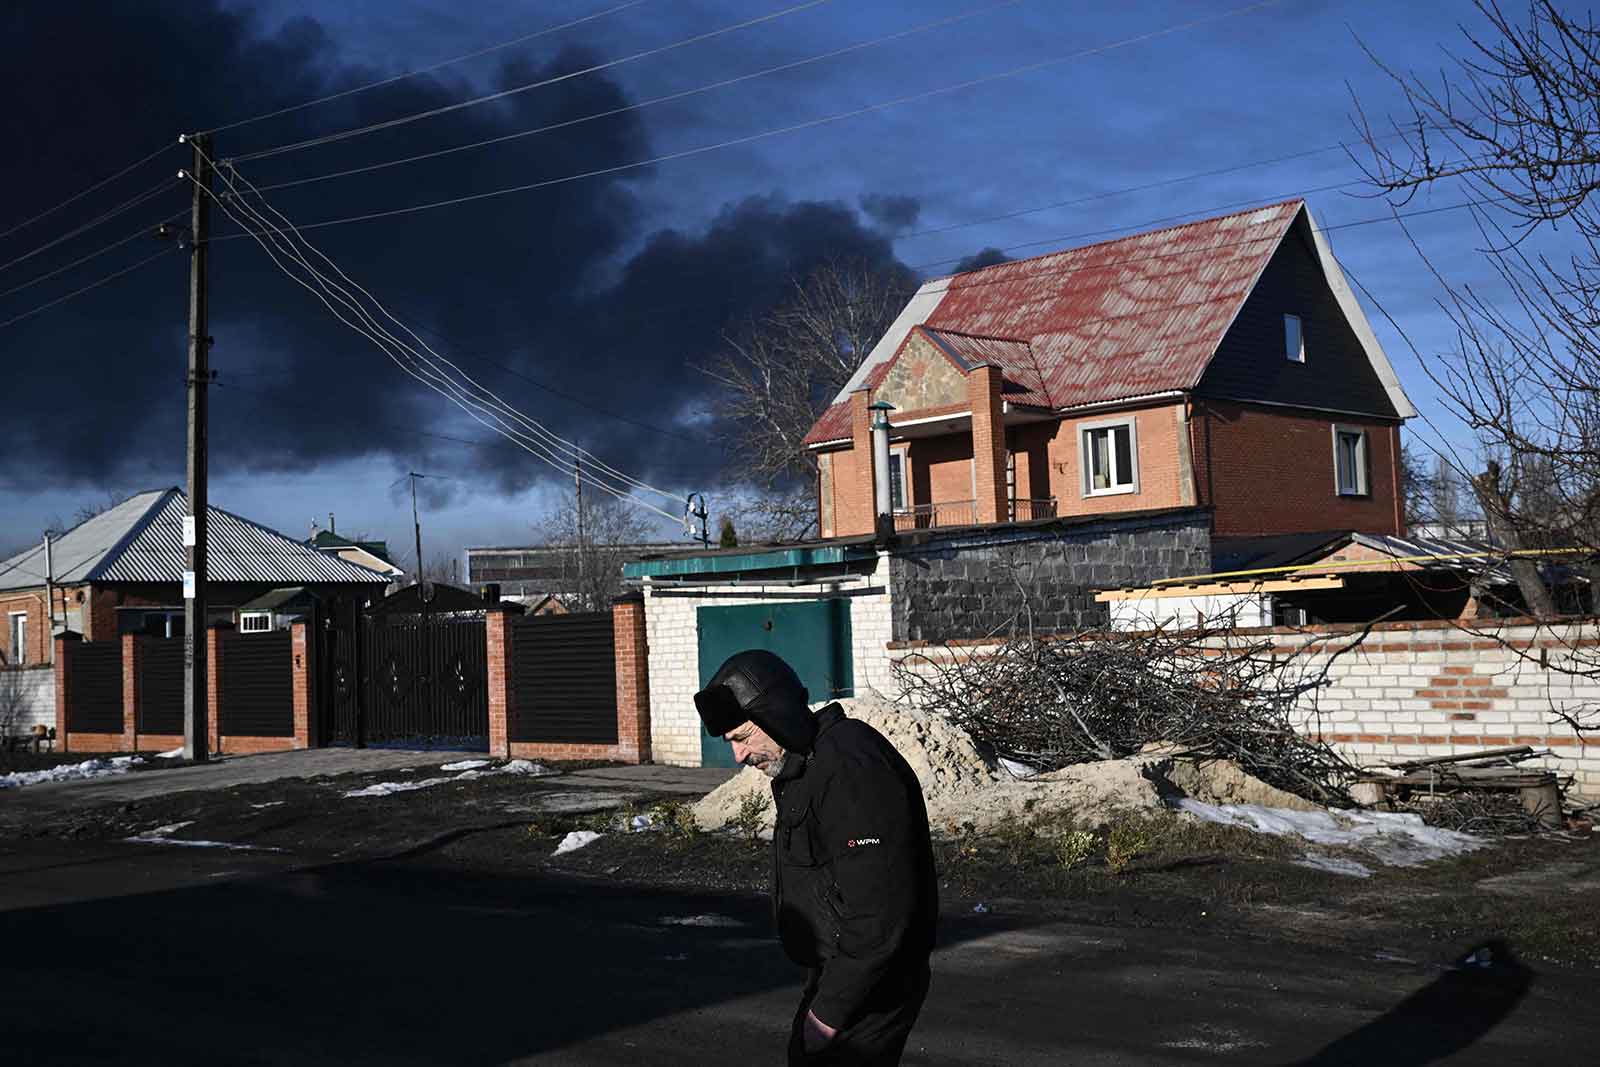 روسی بمباری کے بعد دھویں کے کالے بادل نظر آ رہے ہیں۔ فوٹو: اے ایف پی